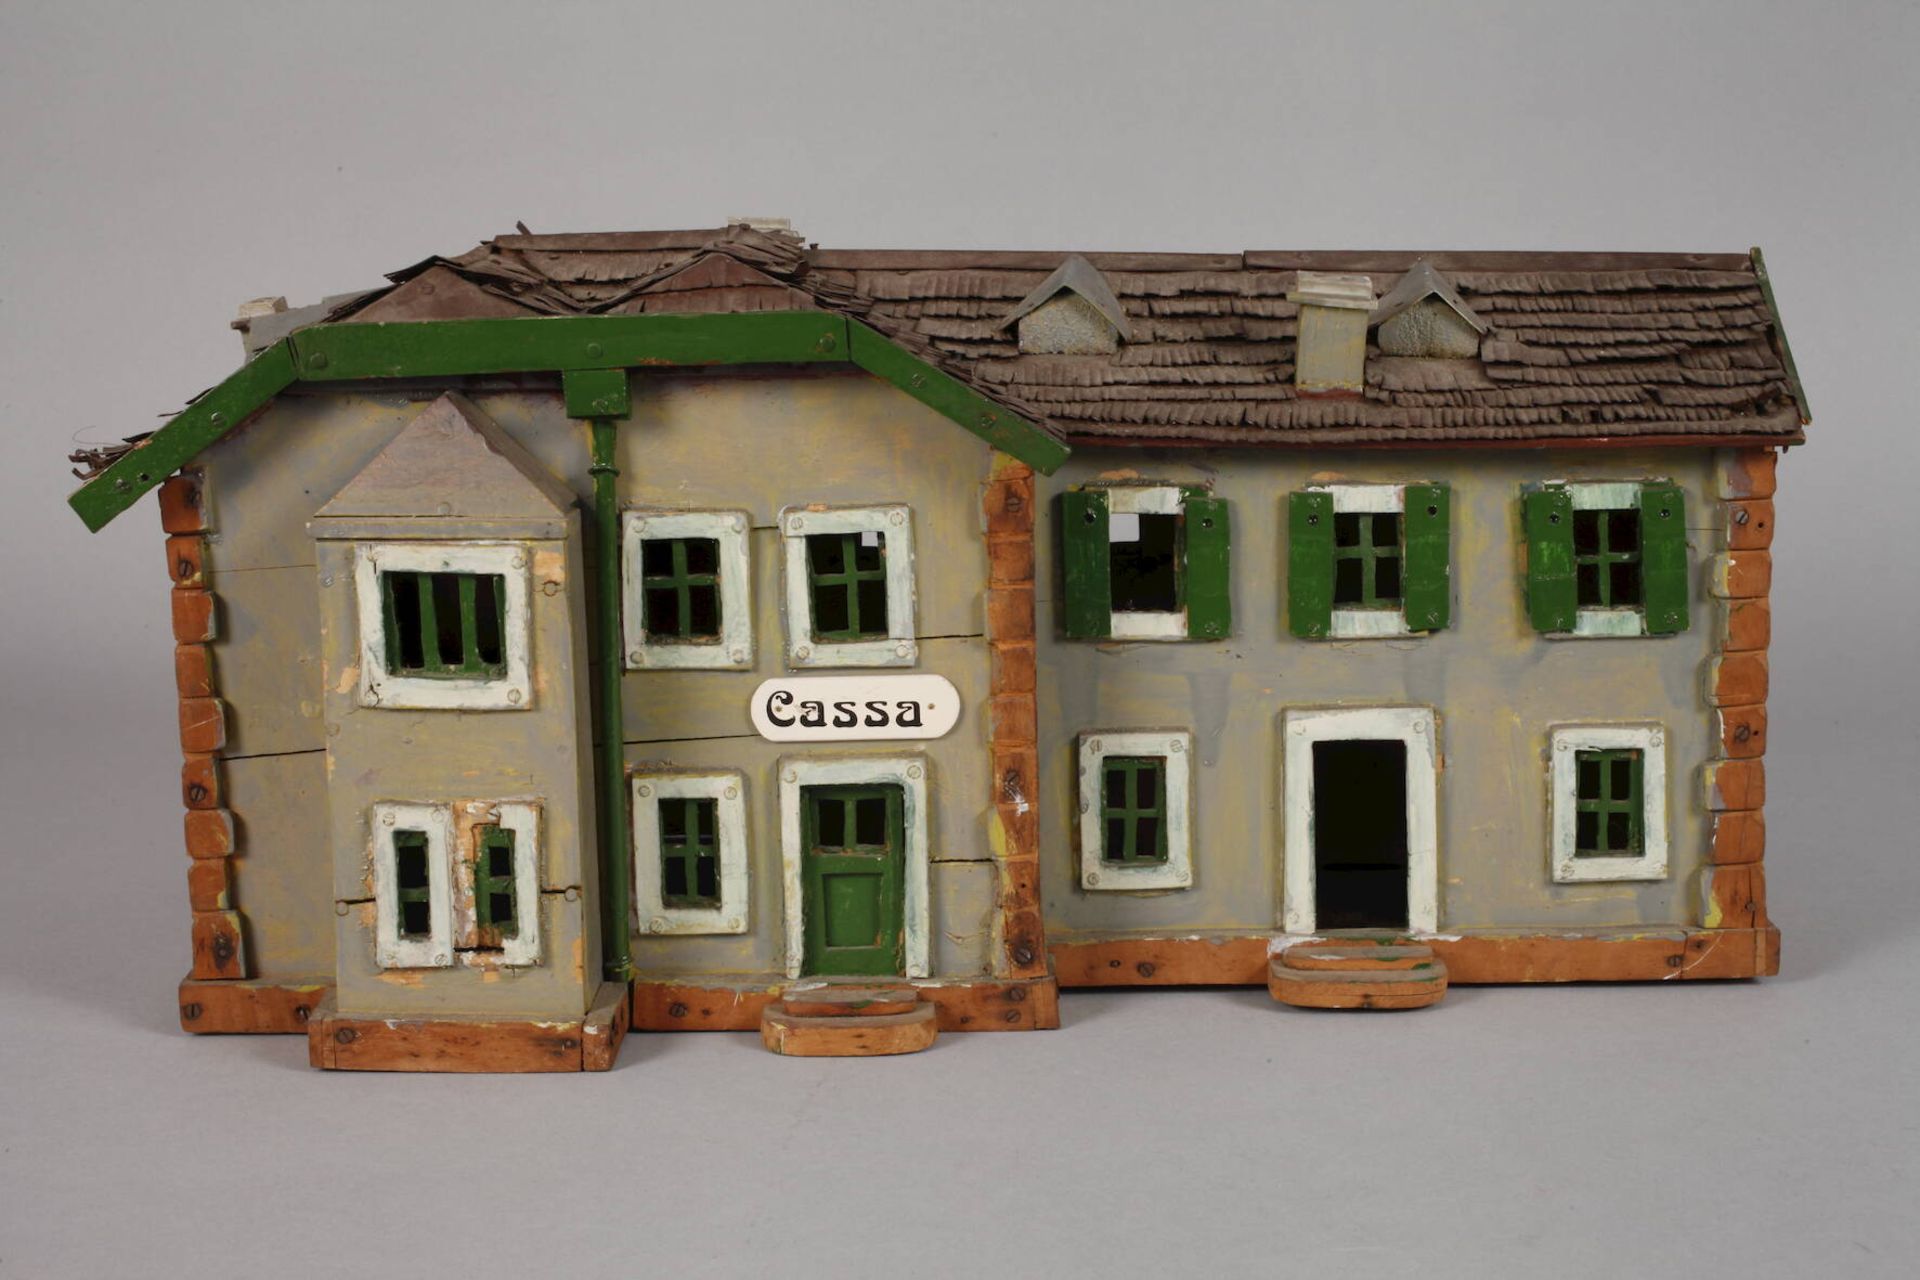 Modellbahnhof um 1900, ungemarkt, farbig gefasstes Holz und Blech, t-förmiger Gebäudekomplex mit - Image 2 of 6